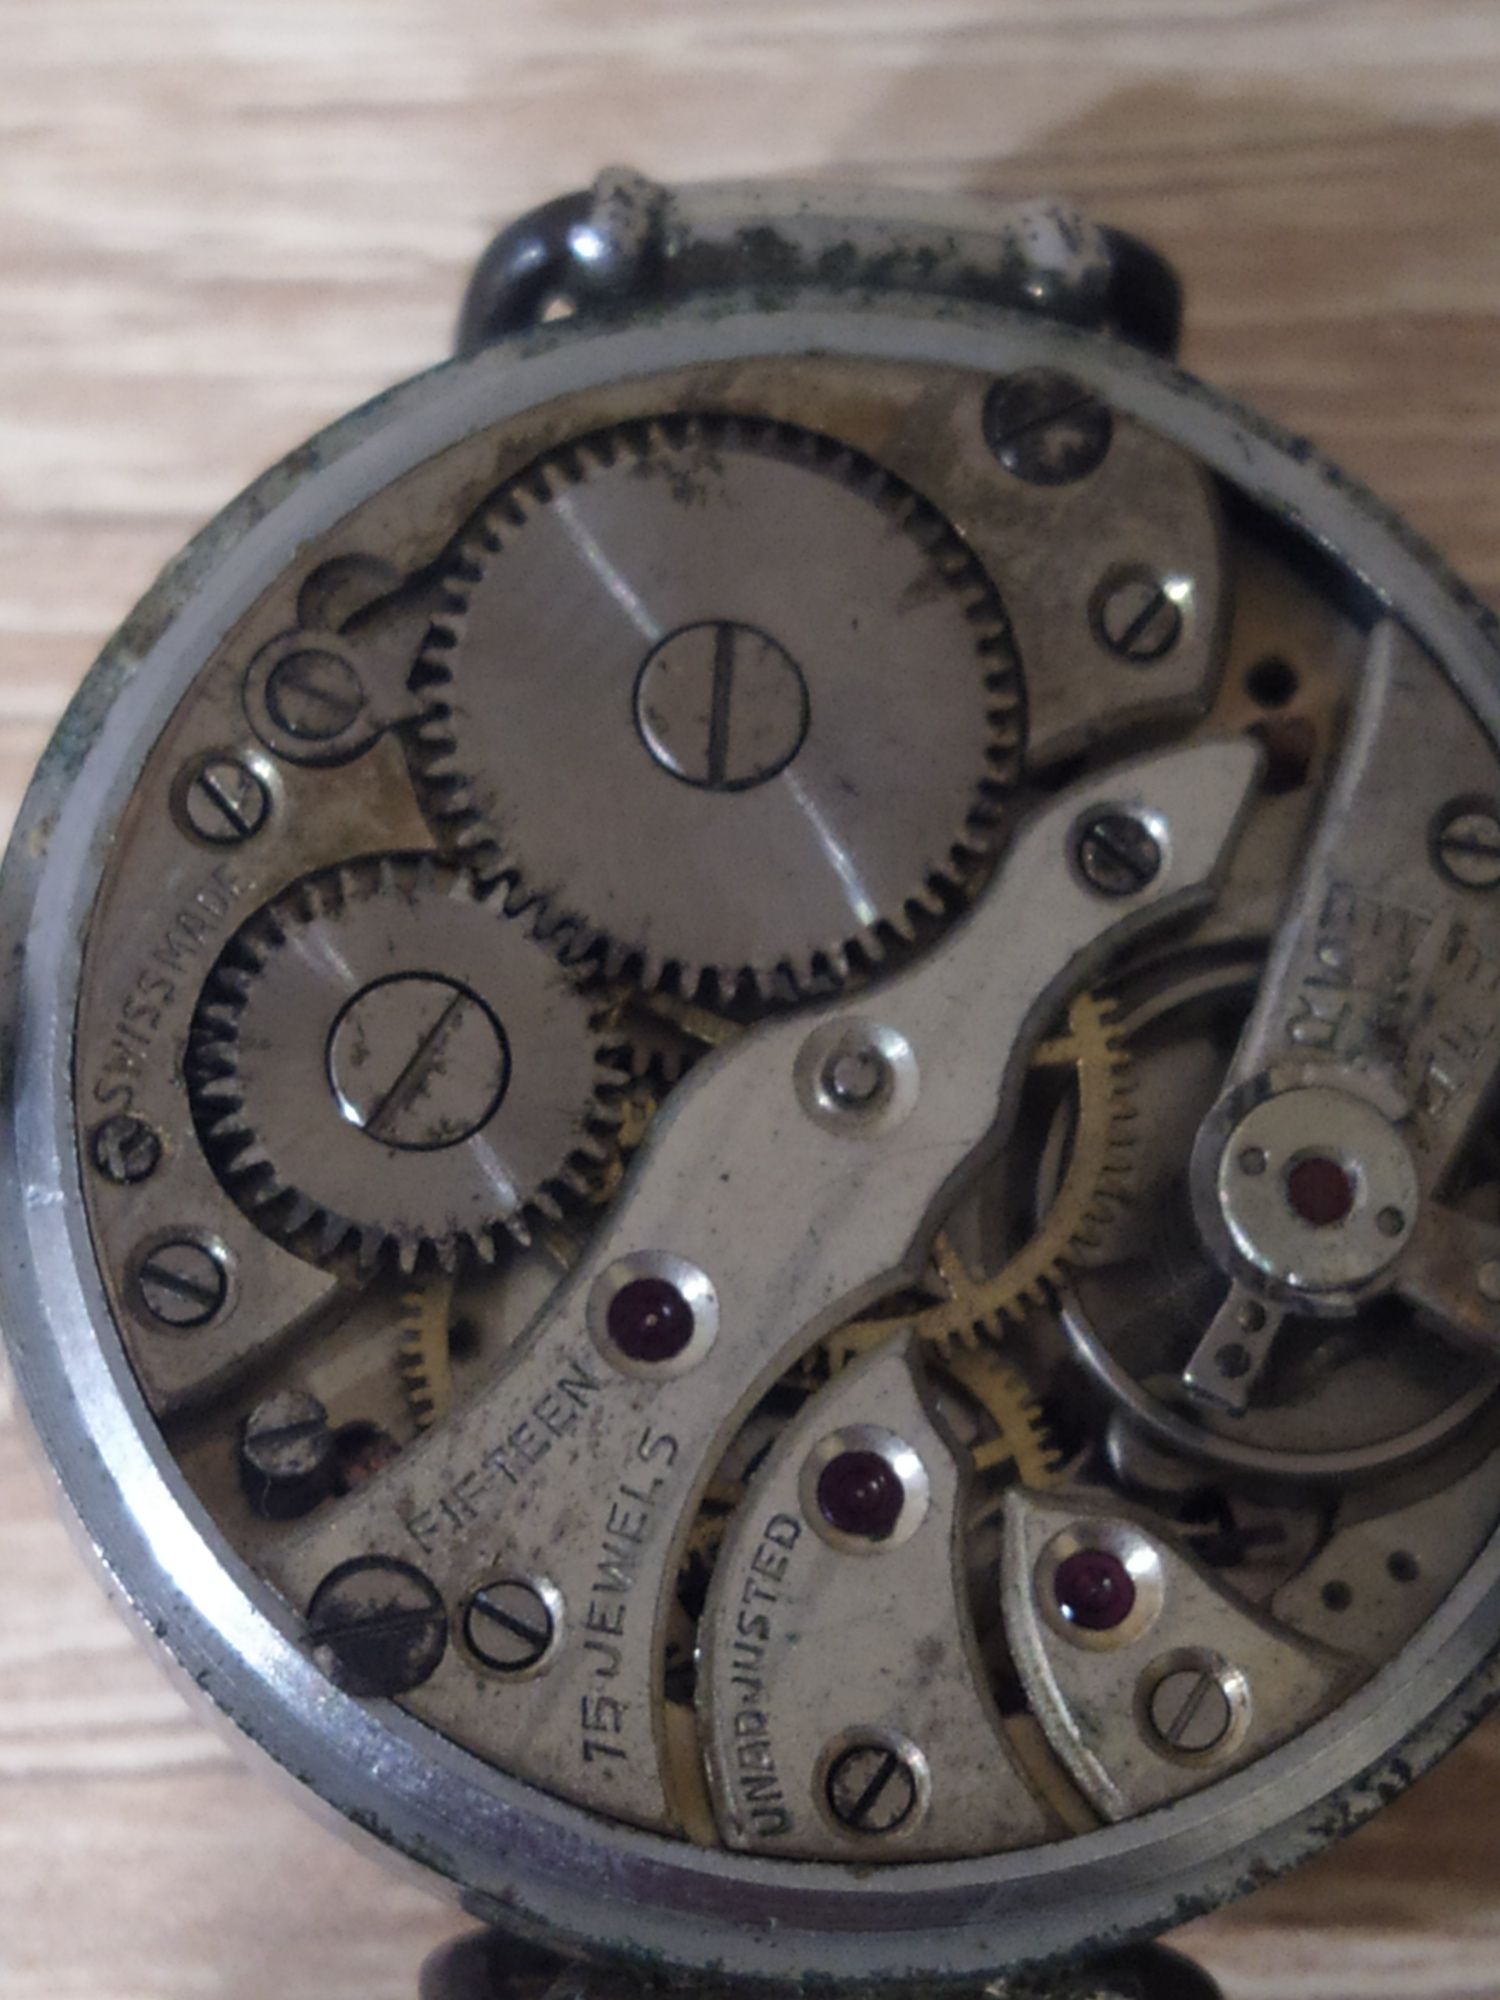 Hronometer Domino Швейцарія. Рік приблизно 1920. На ходу менший циферб